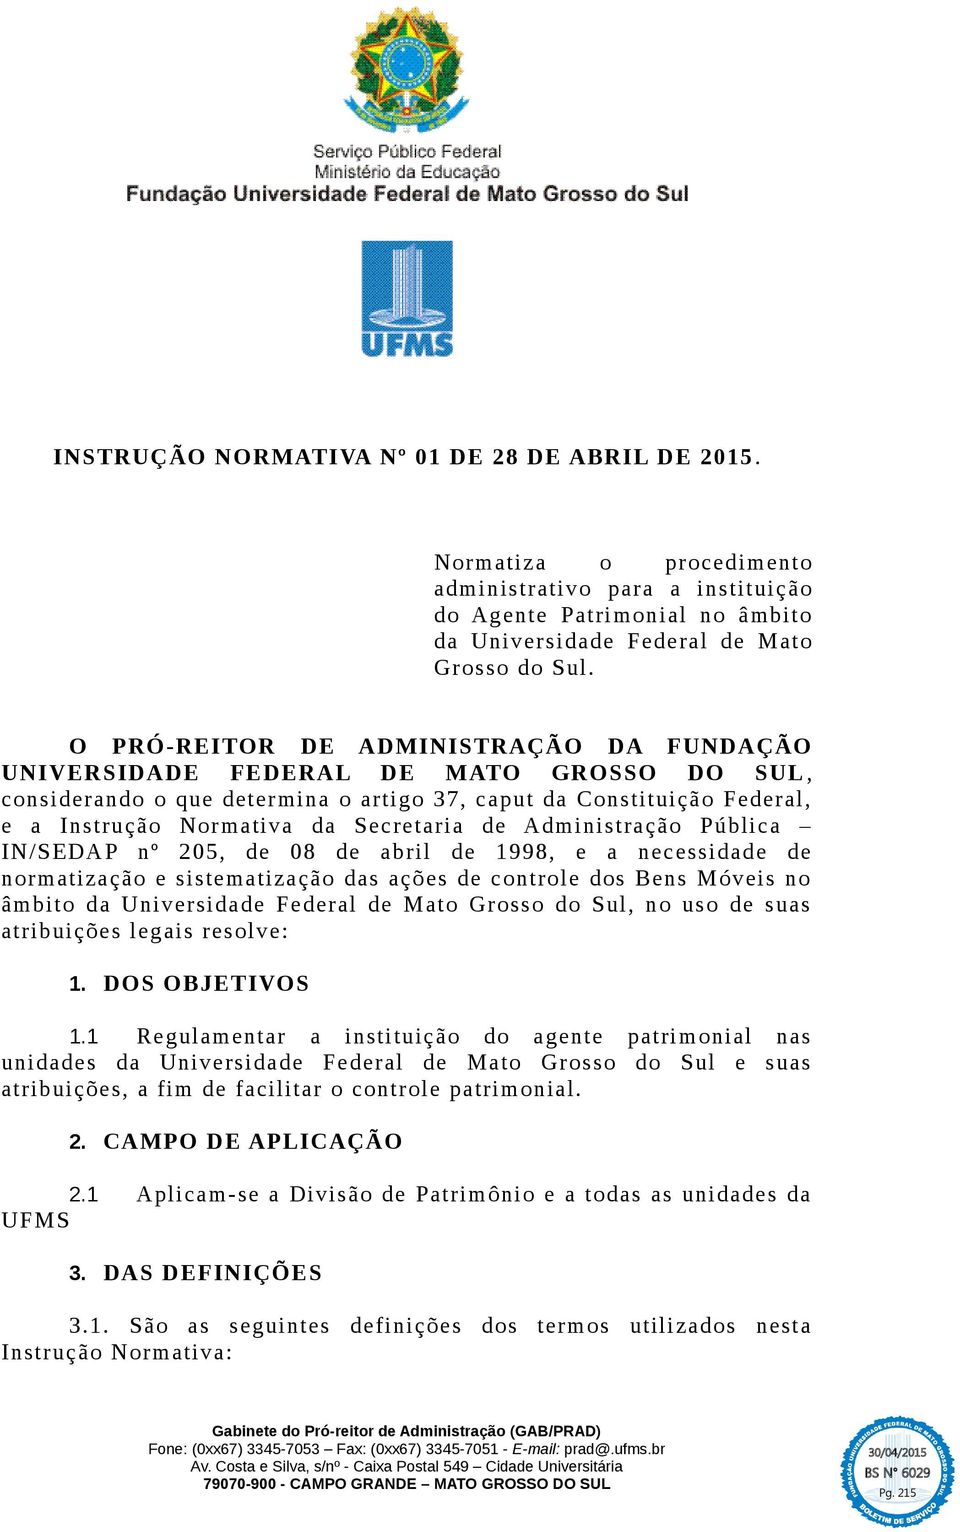 Administração Pública IN/SEDAP nº 205, de 08 de abril de 1998, e a necessidade de normatização e sistematização das ações de controle dos Bens Móveis no âmbito da Universidade Federal de Mato Grosso